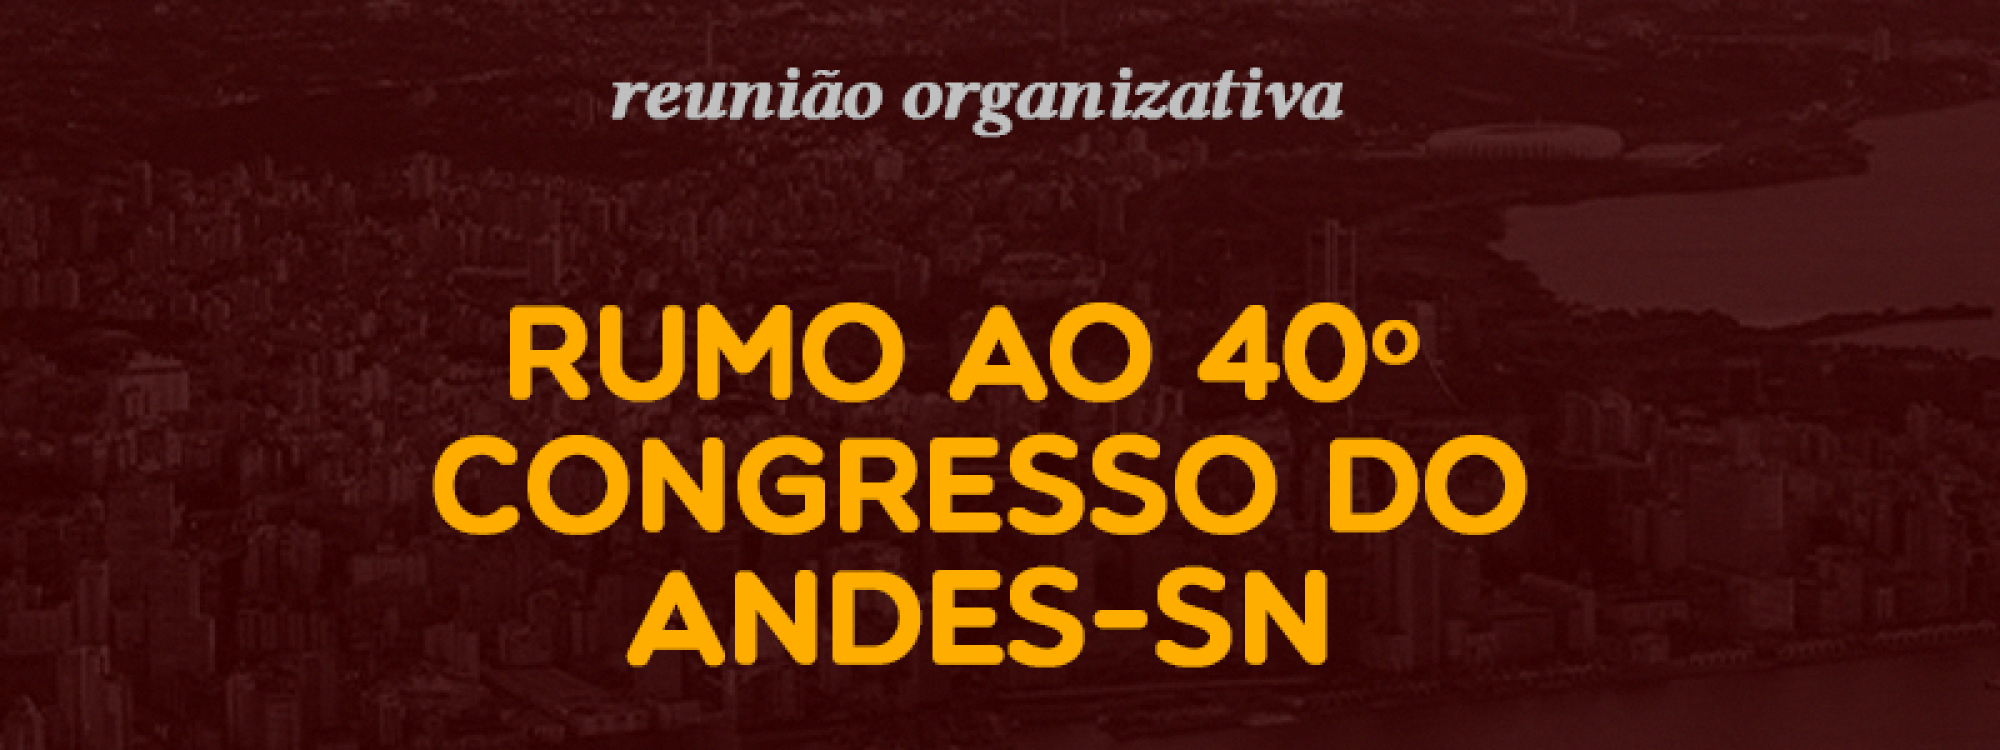 Reunião com GT e Colegiada rumo ao Congresso do ANDES de 2022